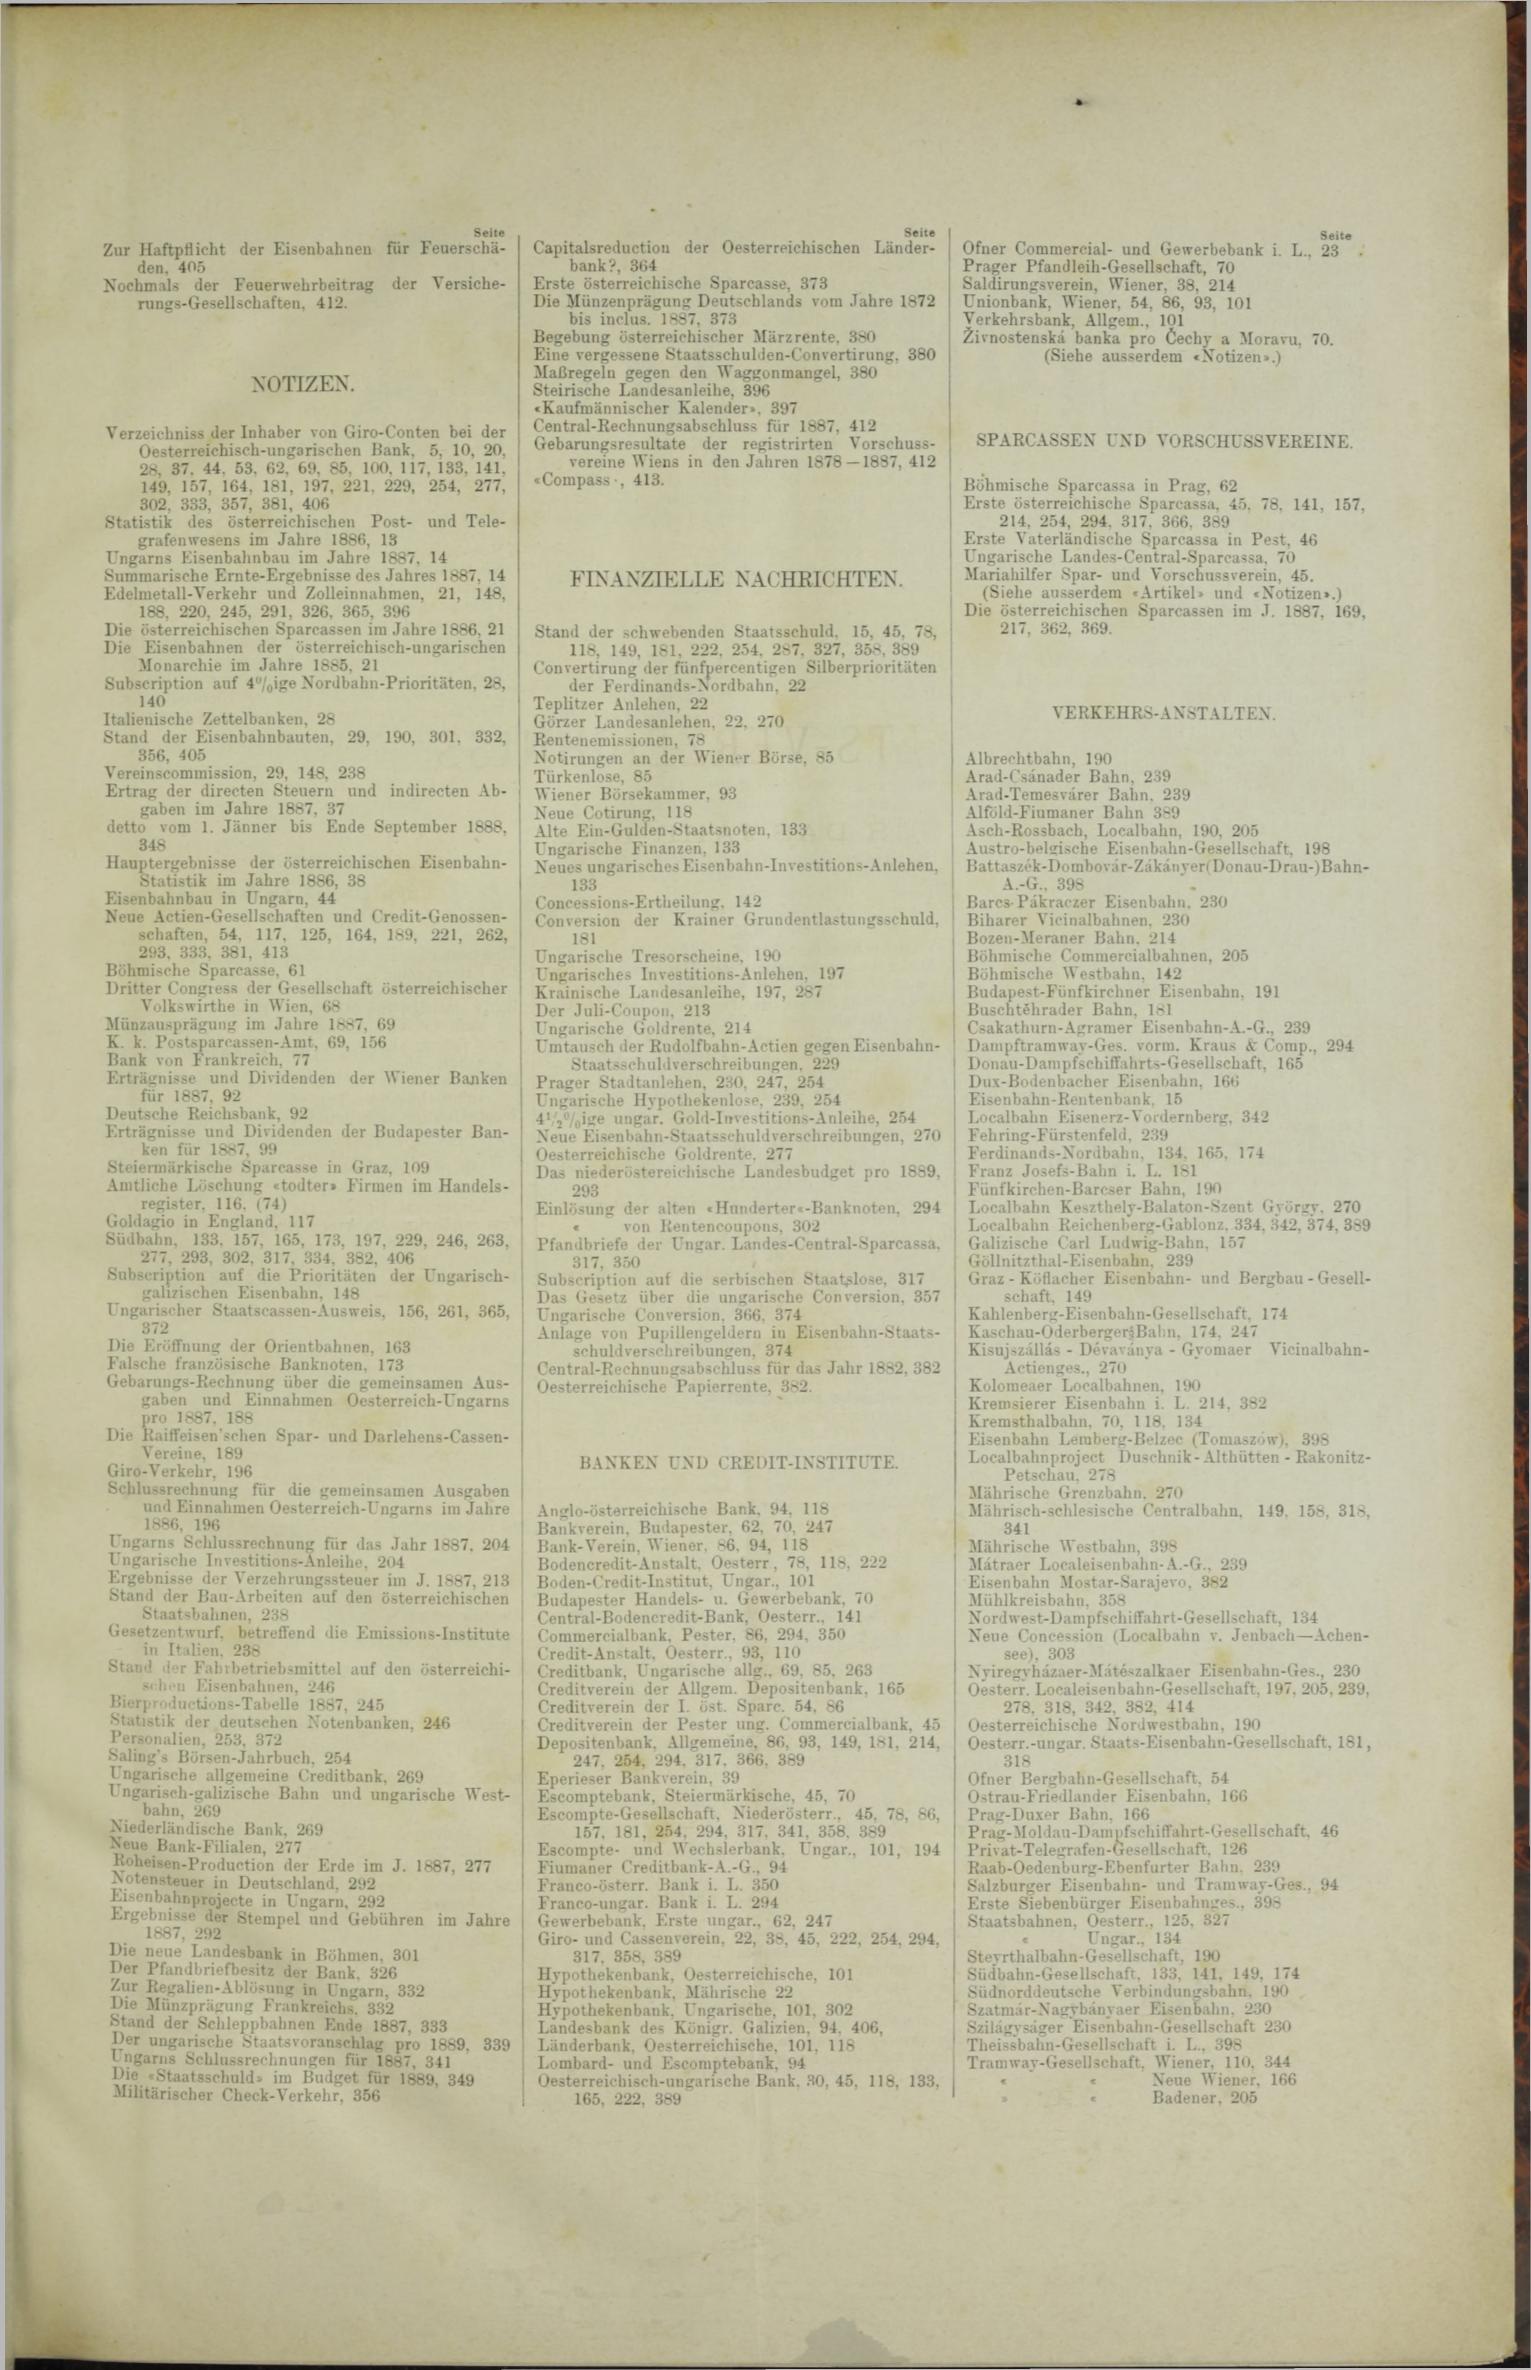 Der Tresor 20.09.1888 - Seite 11